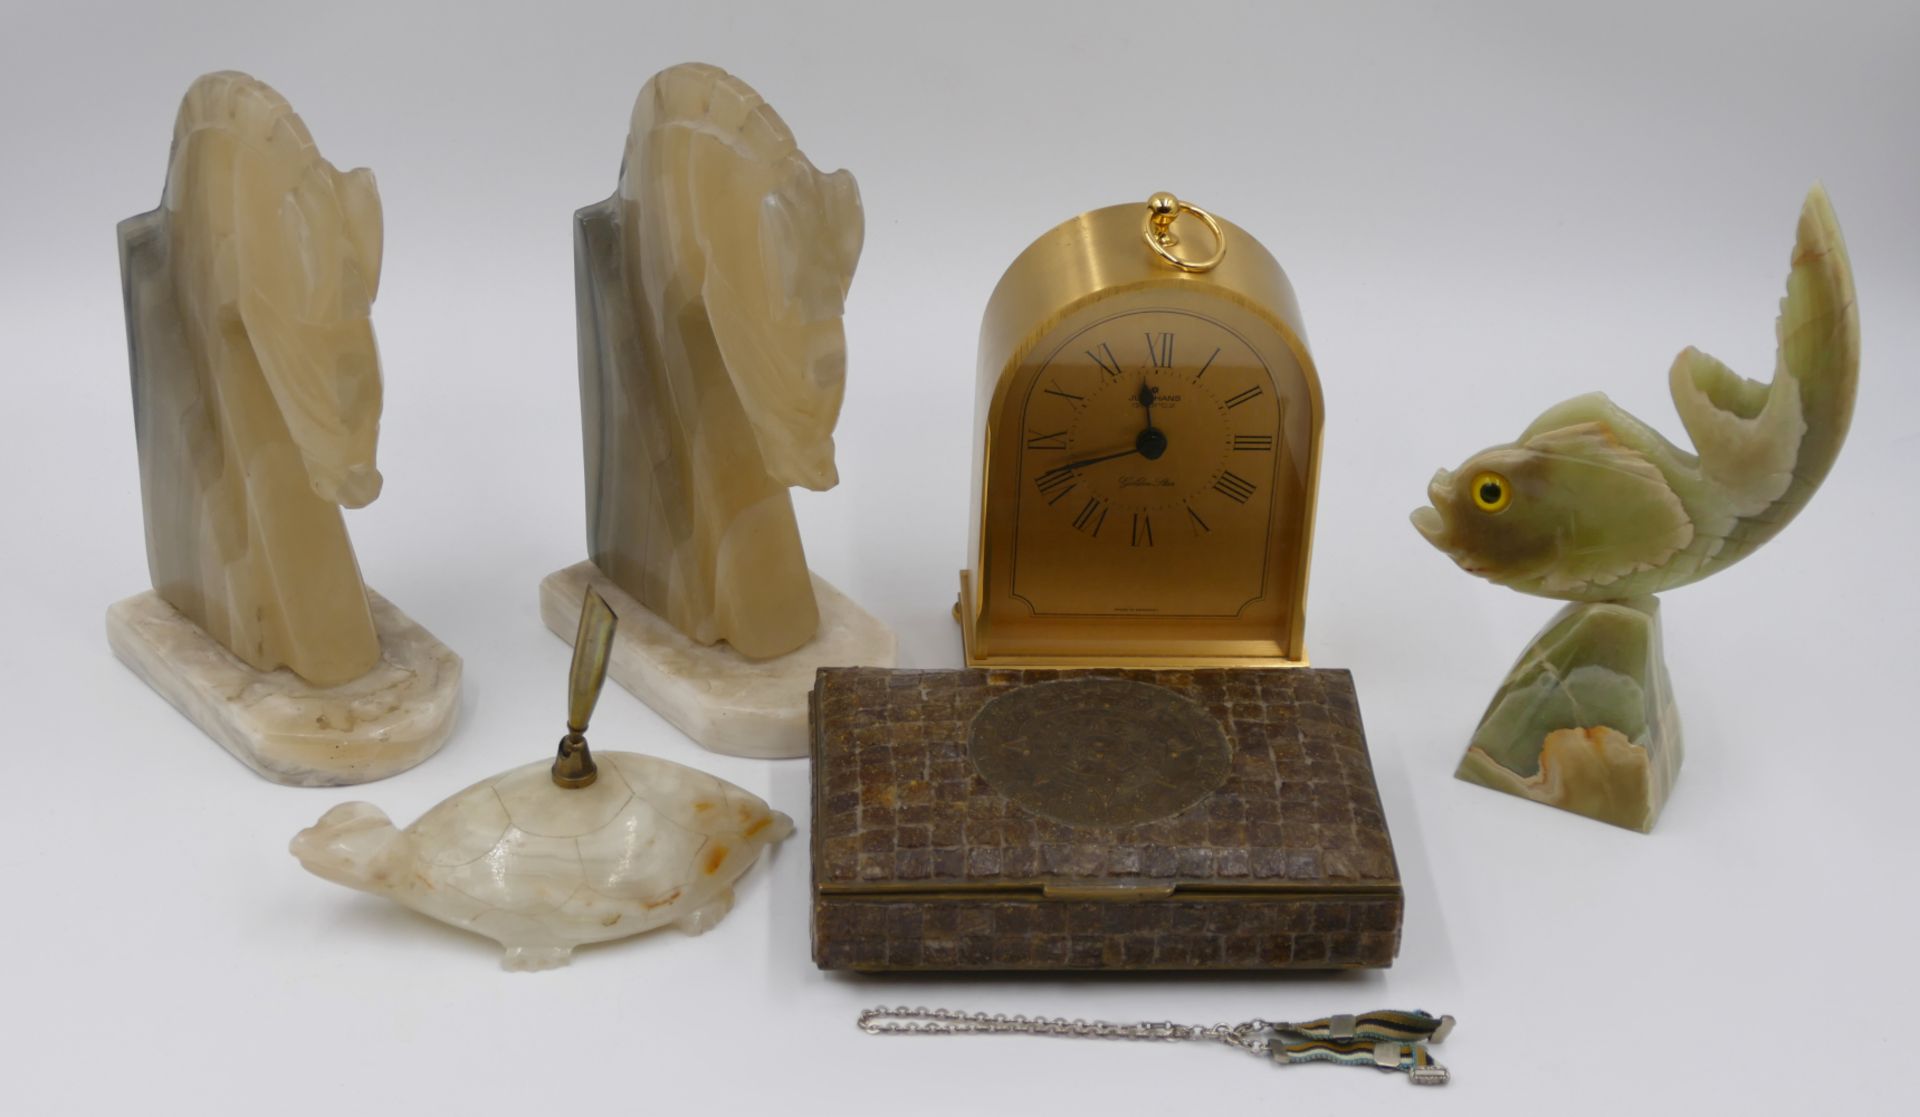 1 Mineraliensammlung: "Gesteins-Sammlung CHRIST&STOLTE", Holzschatulle in Buchform ca. L 30cm mit 49